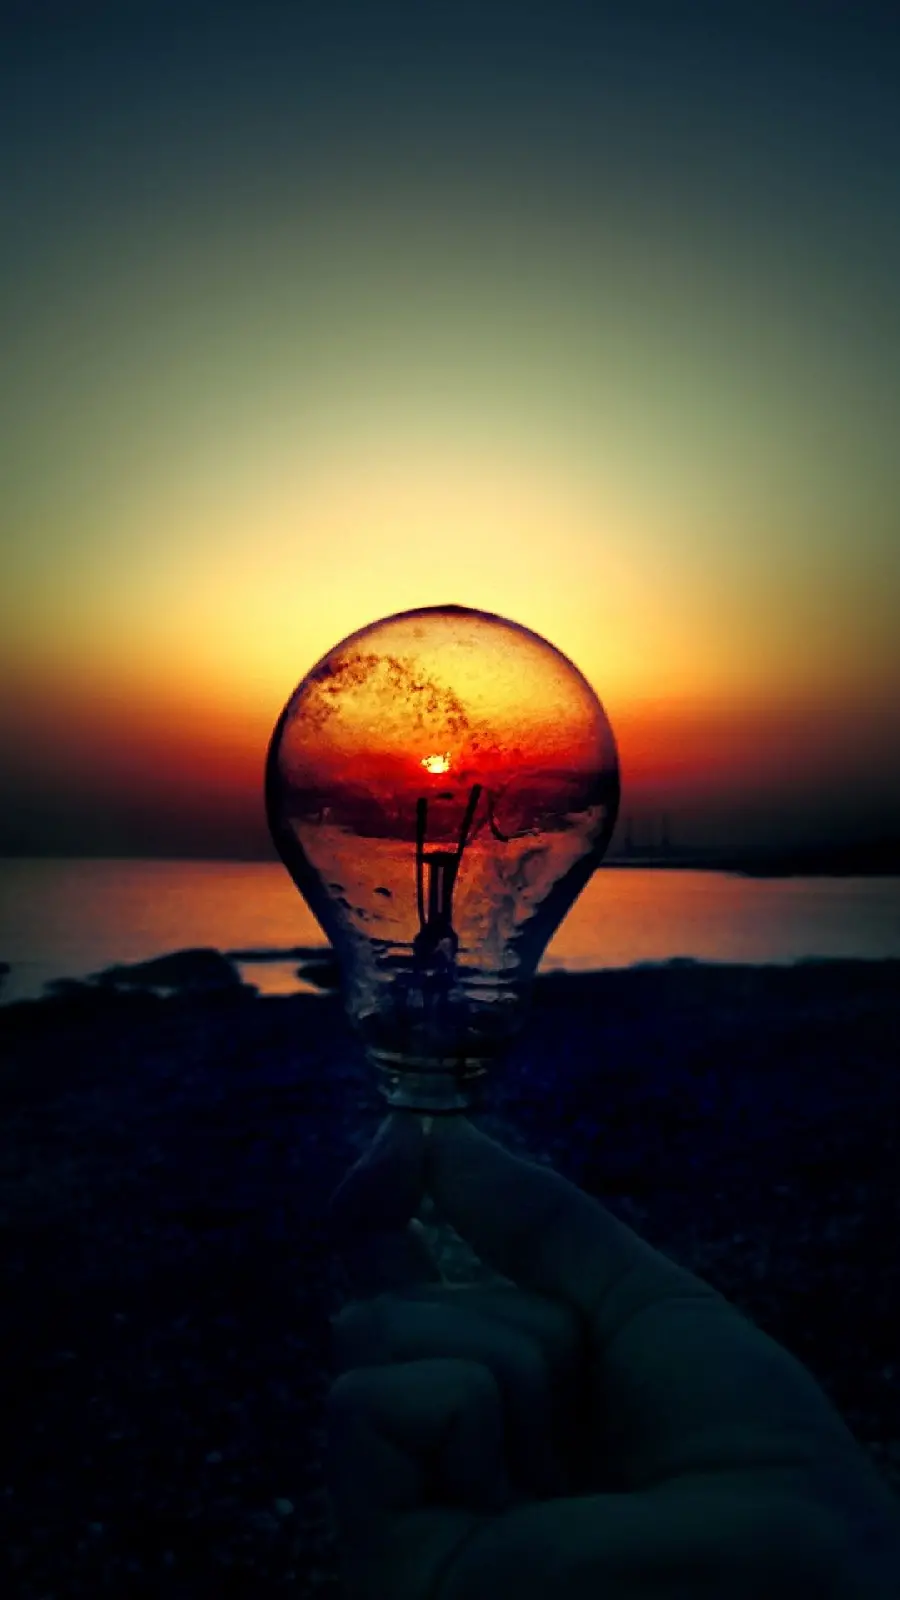 نمای هنری جذاب از لامپ در غروب آفتاب با کیفیت اچ دی